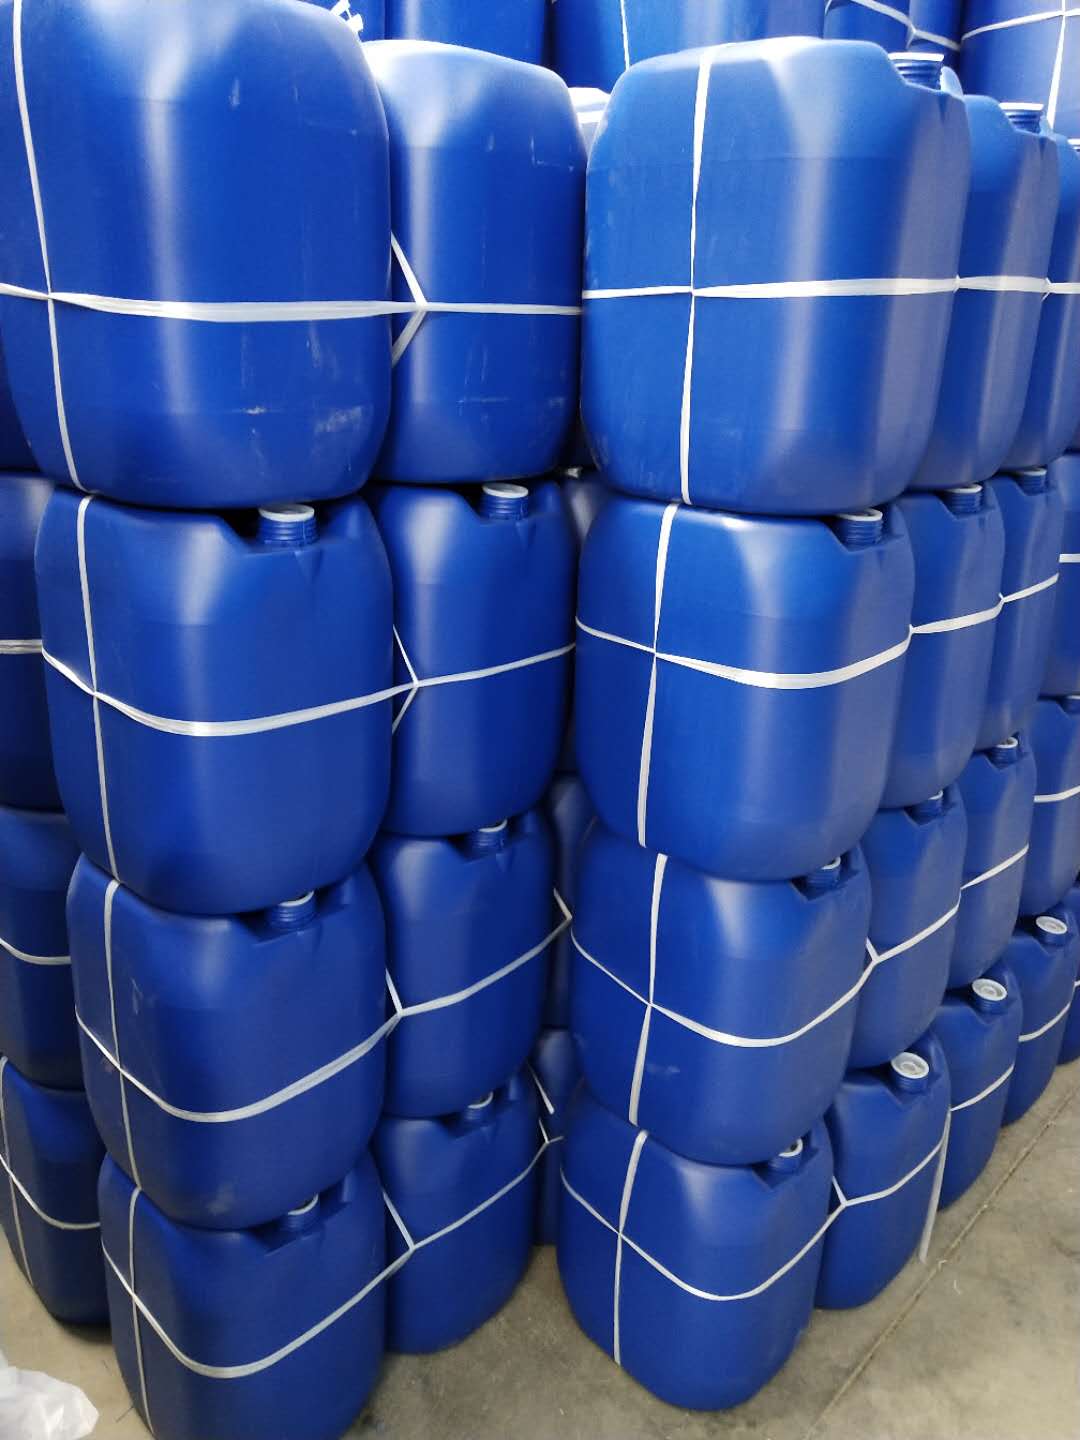 佛山30升塑胶桶|塑料桶||包装桶|厂家直销|批发价格|哪家好|哪家便宜图片